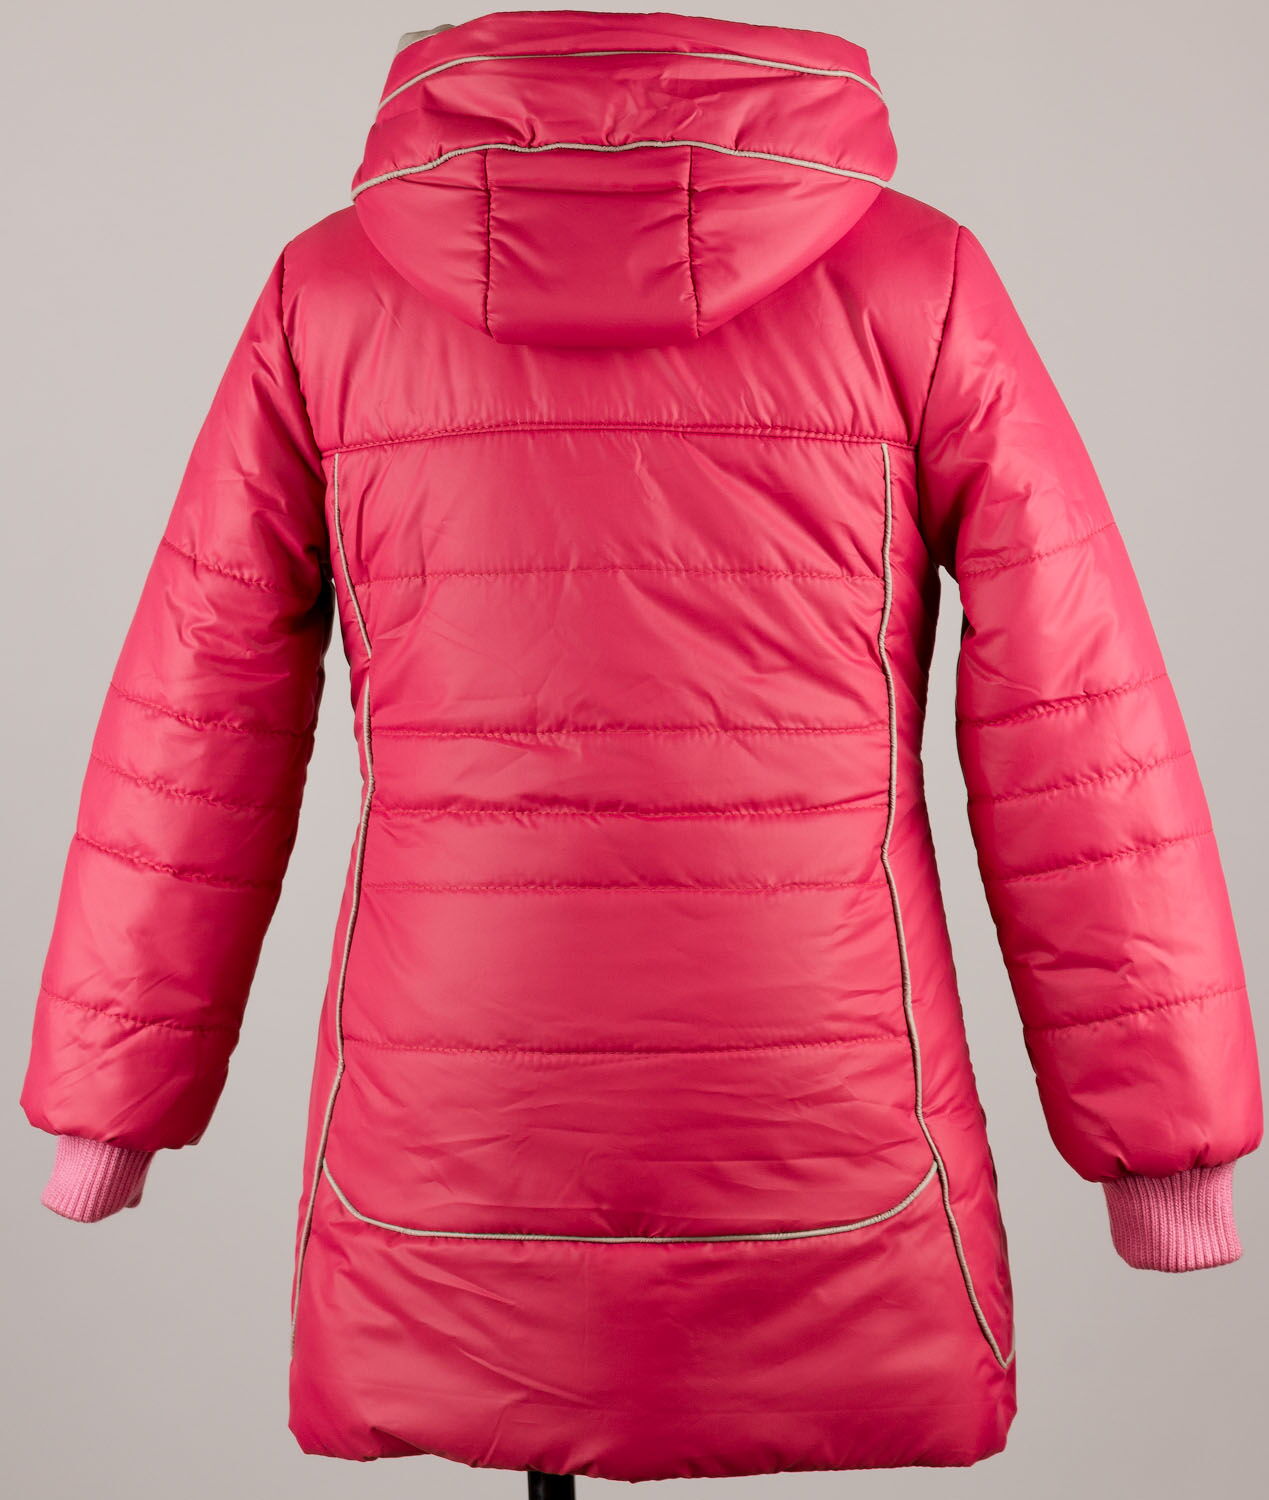 Куртка удлиненная для девочки Одягайко розовая 2513 - картинка